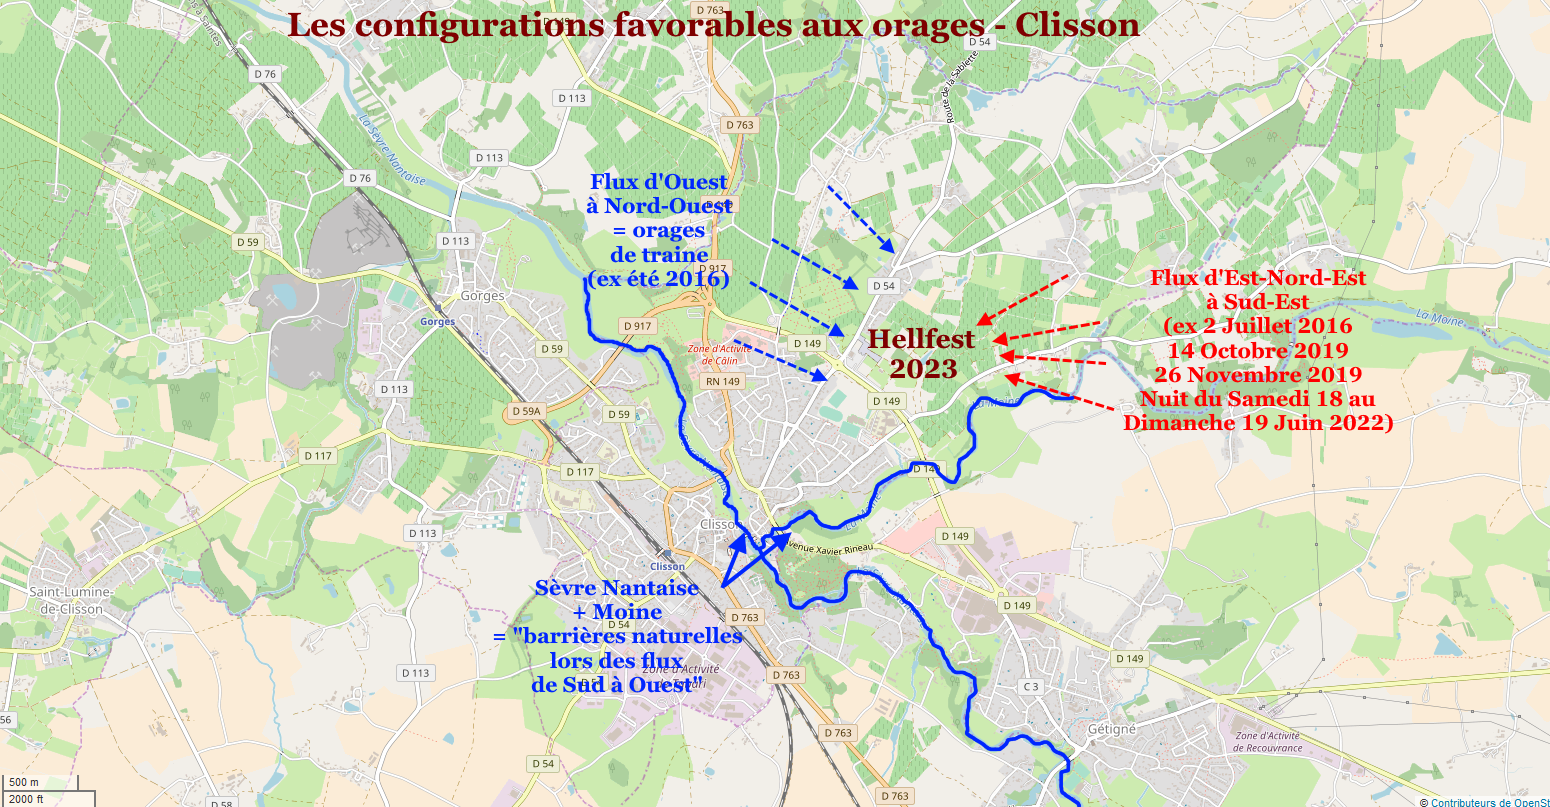 Probabilits orages configuration Clisson 2023